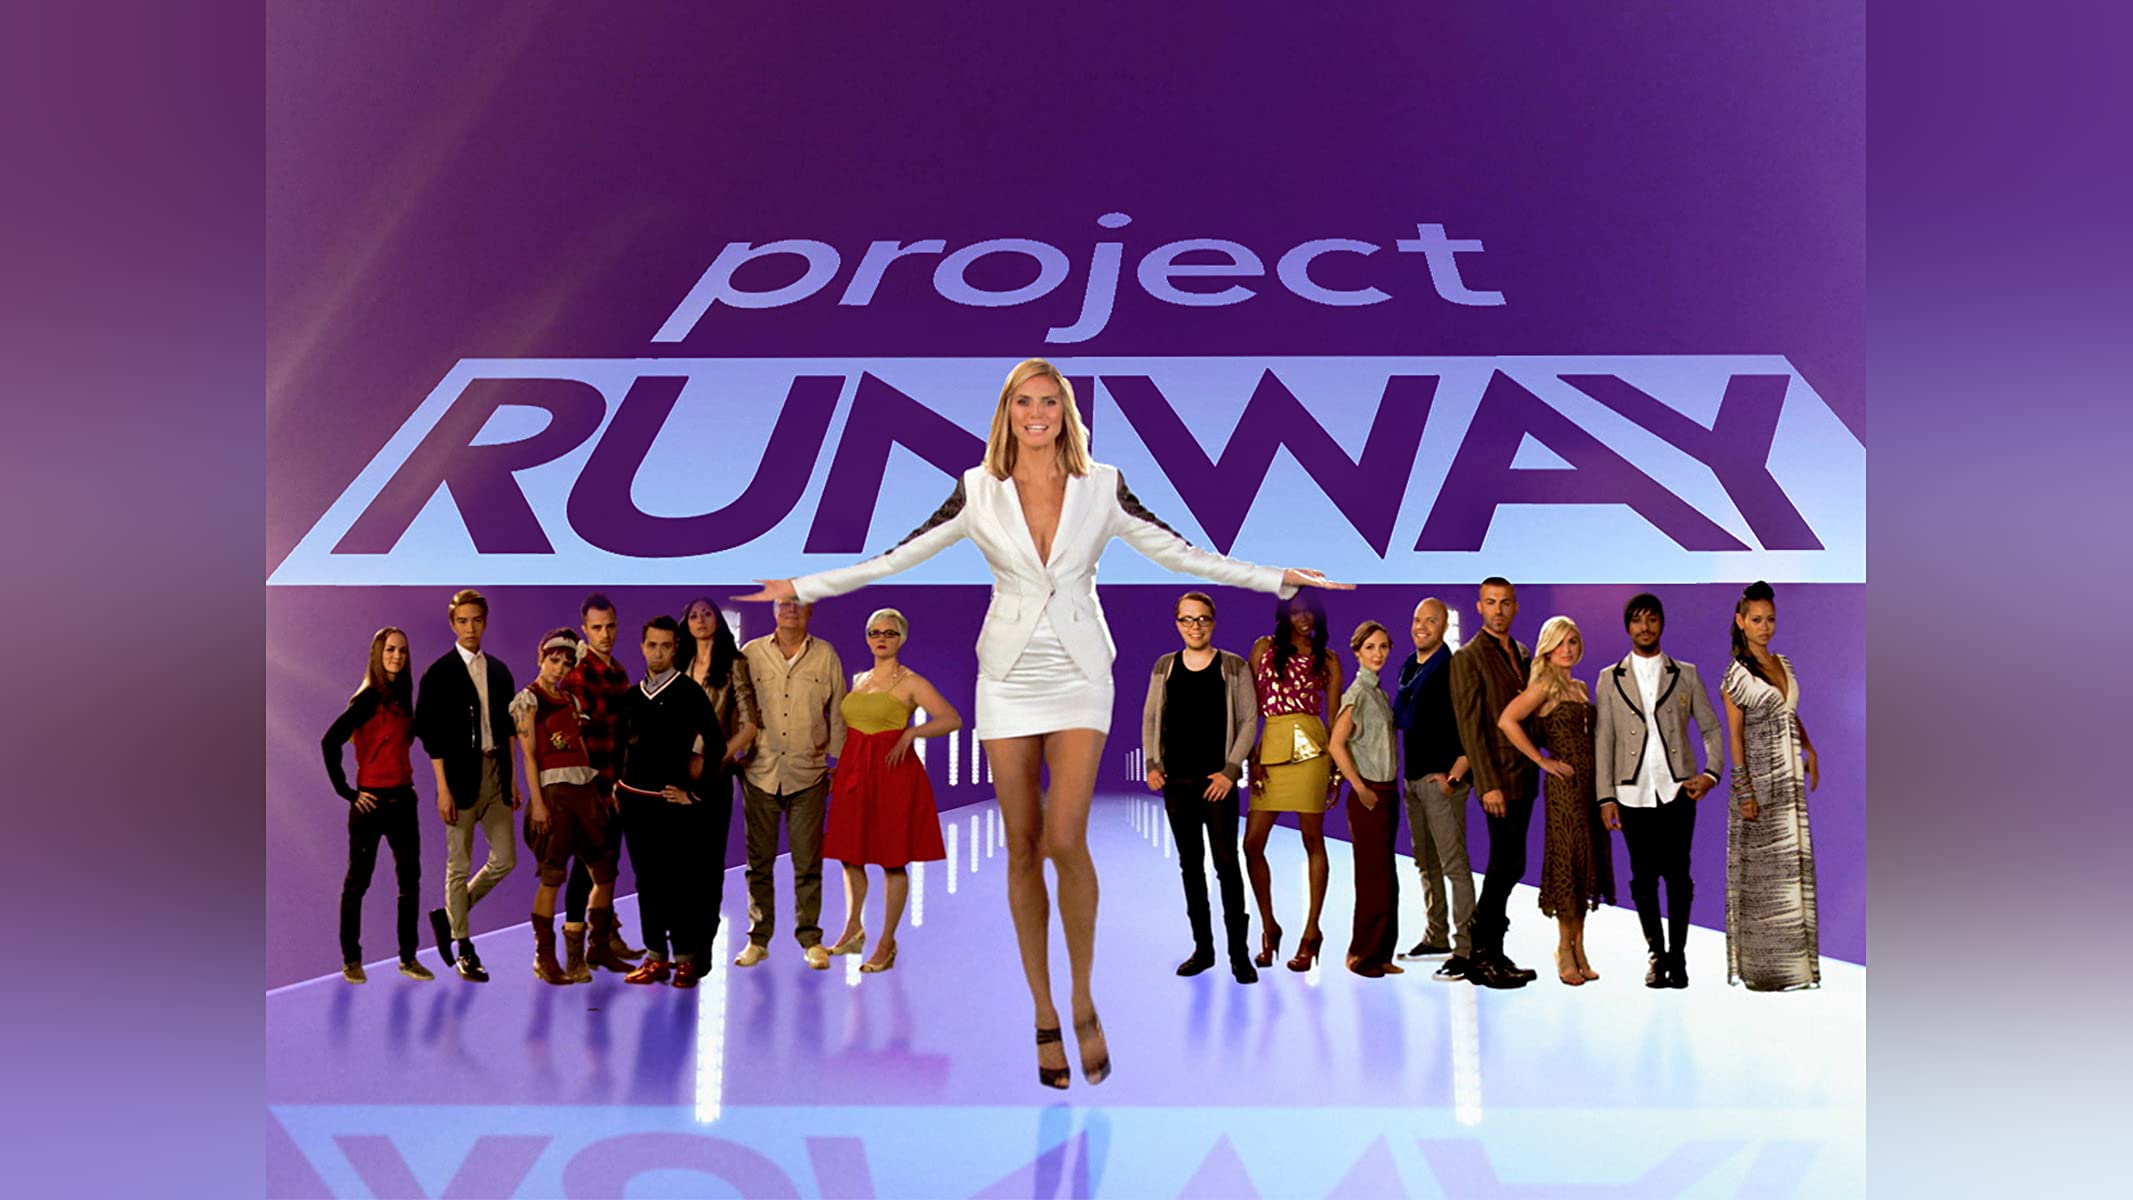 project runway season 9 watch online free